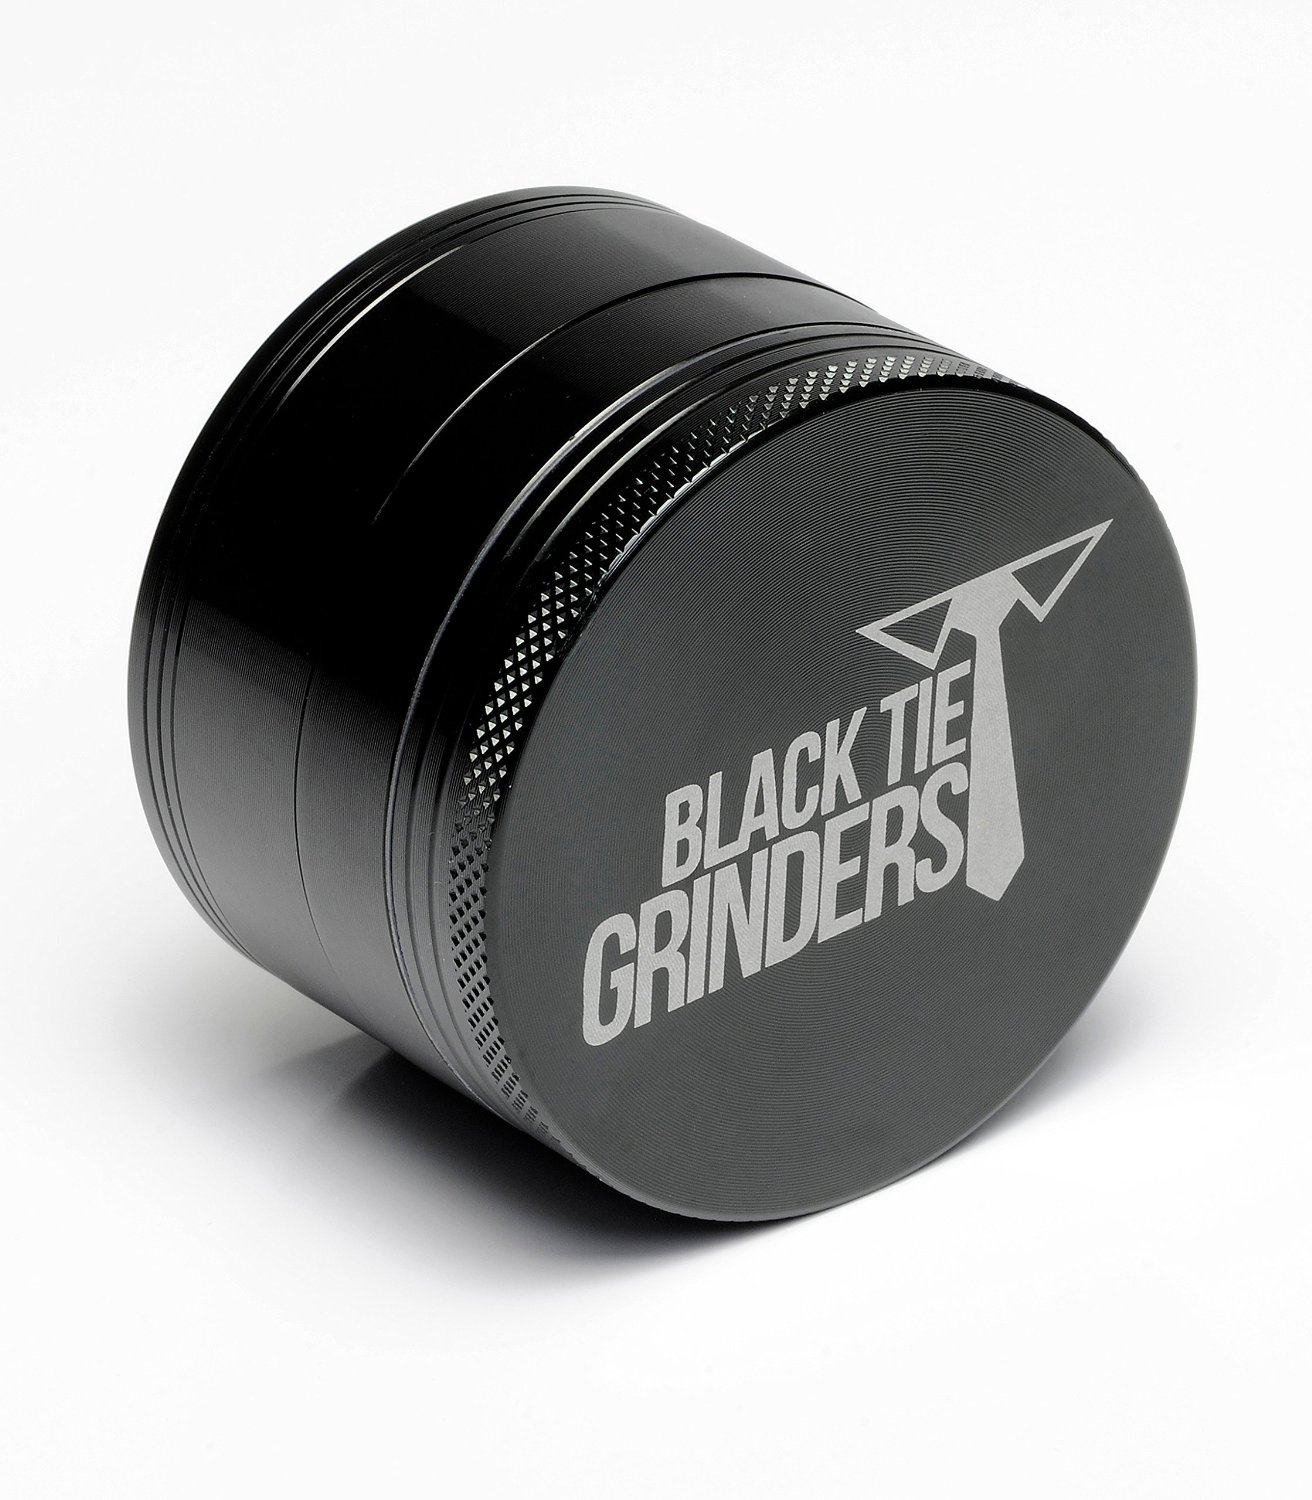 Black Tie Grinders